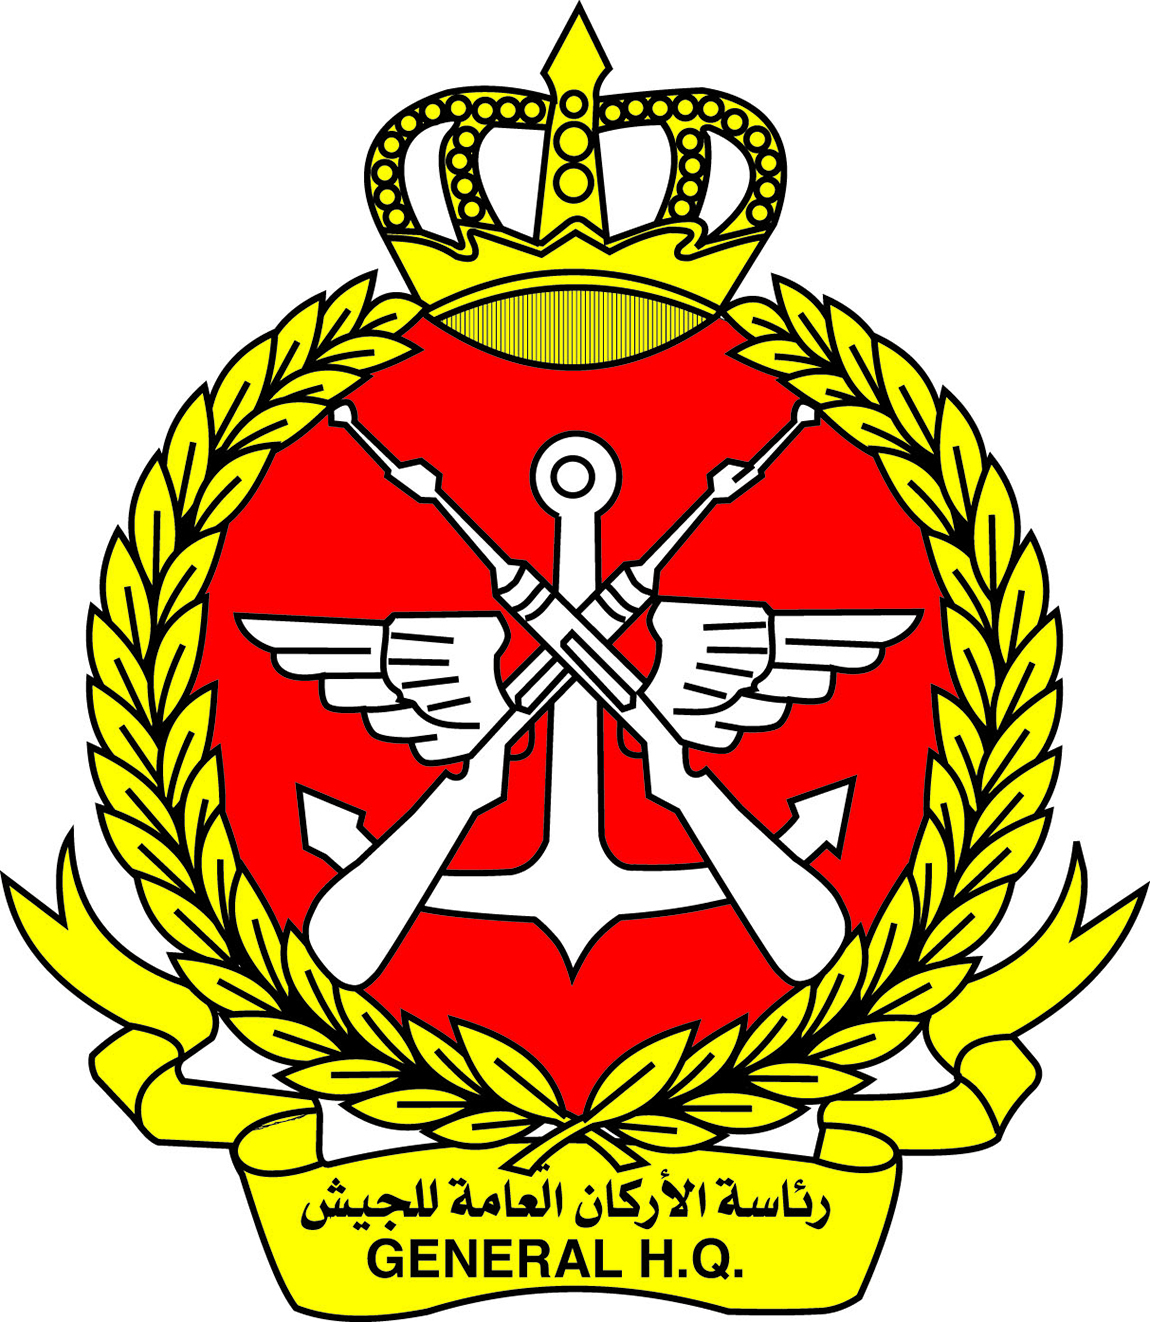 Kuwait's Army General Staff